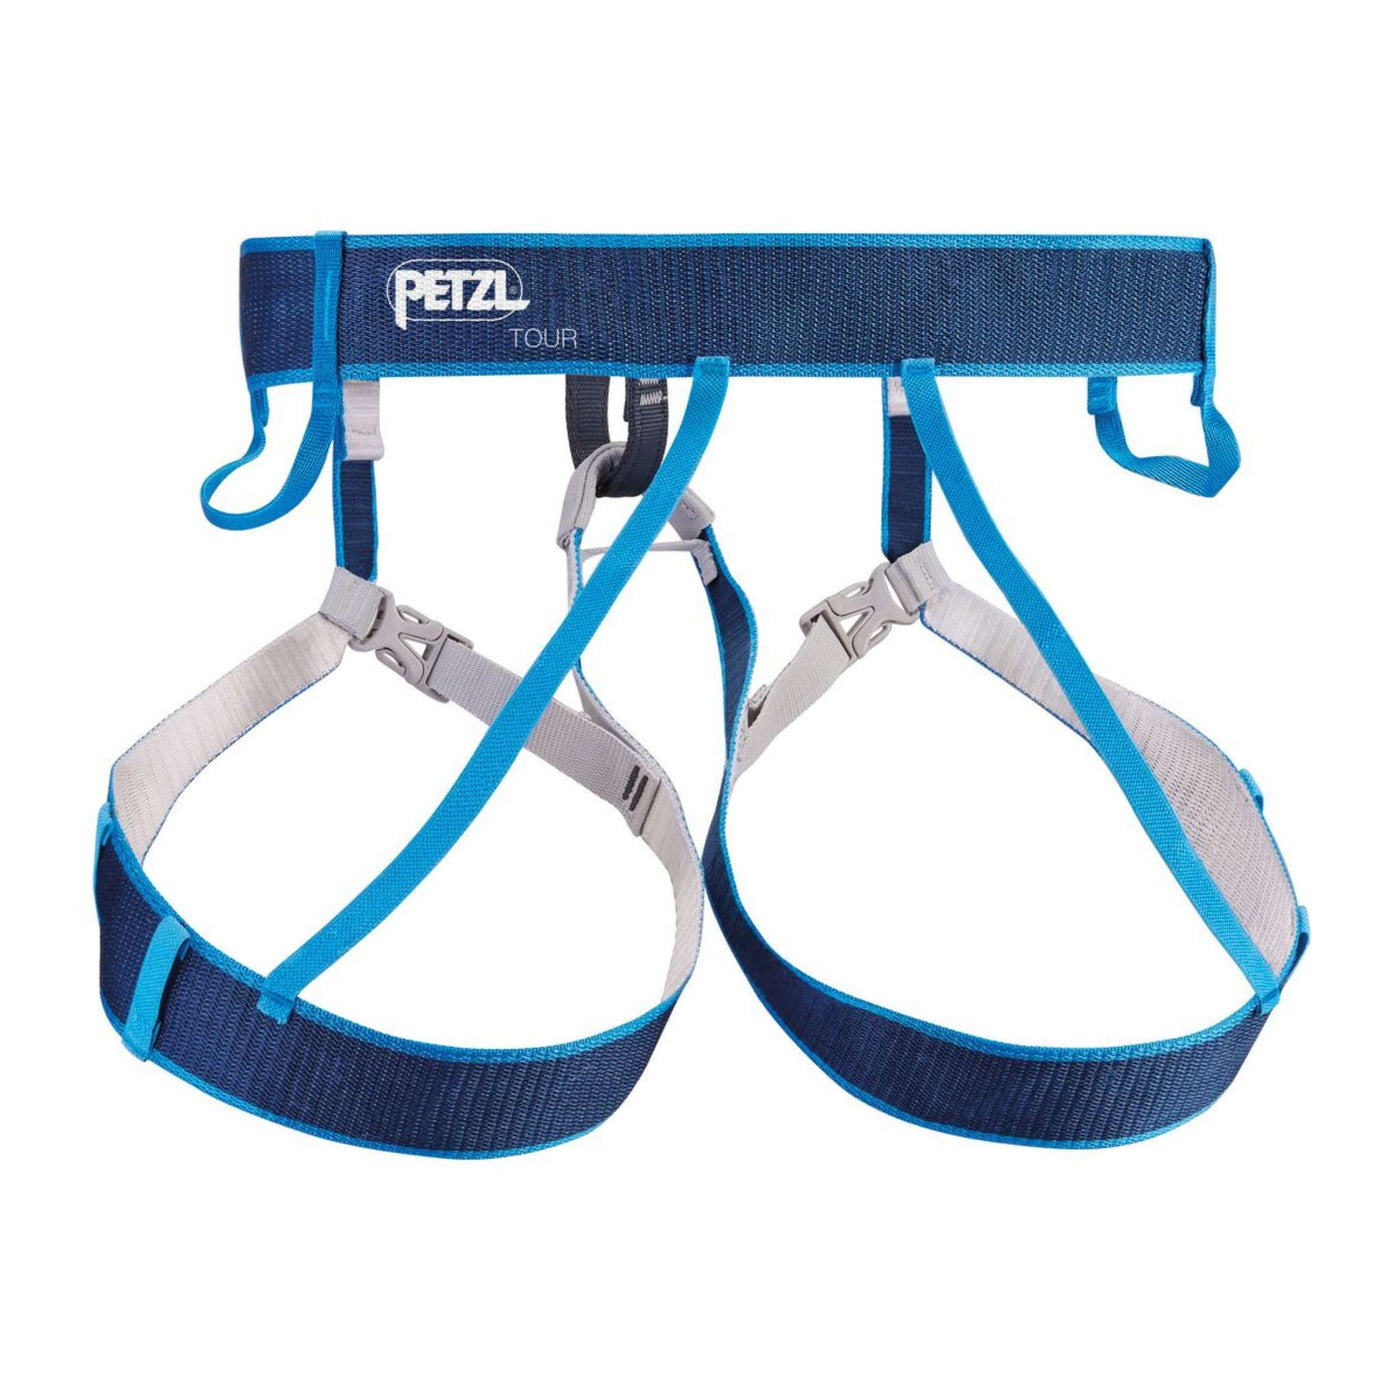 Petzl Tour Harness | Technical Climbing Harness | Further Faster Christchurch NZ | #blue